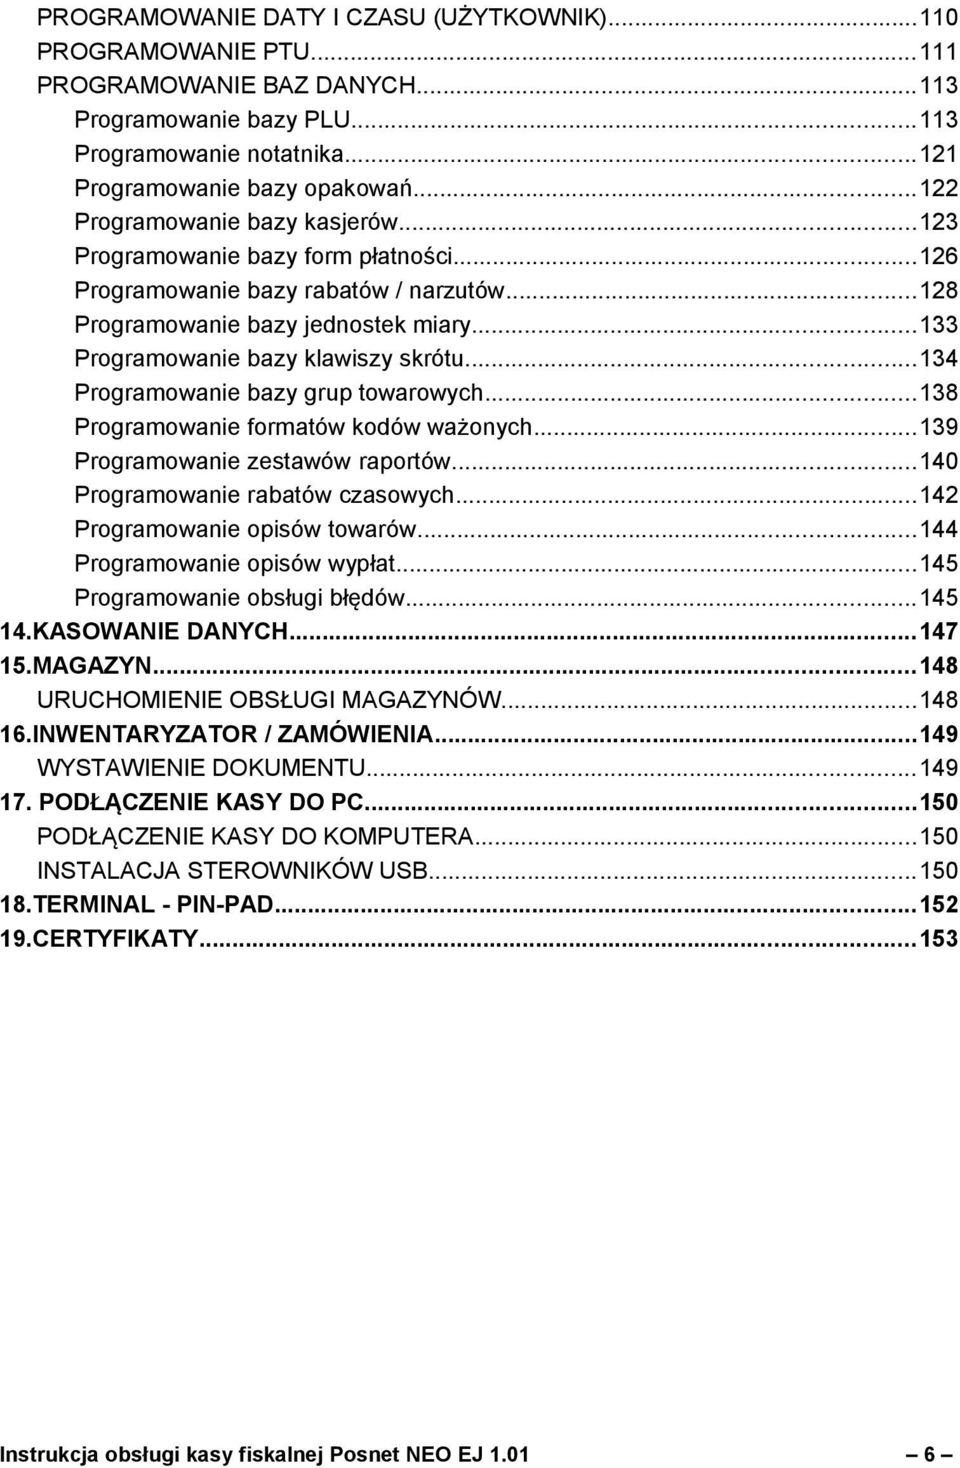 ..134 Programowanie bazy grup towarowych...138 Programowanie formatów kodów ważonych...139 Programowanie zestawów raportów...140 Programowanie rabatów czasowych...142 Programowanie opisów towarów.